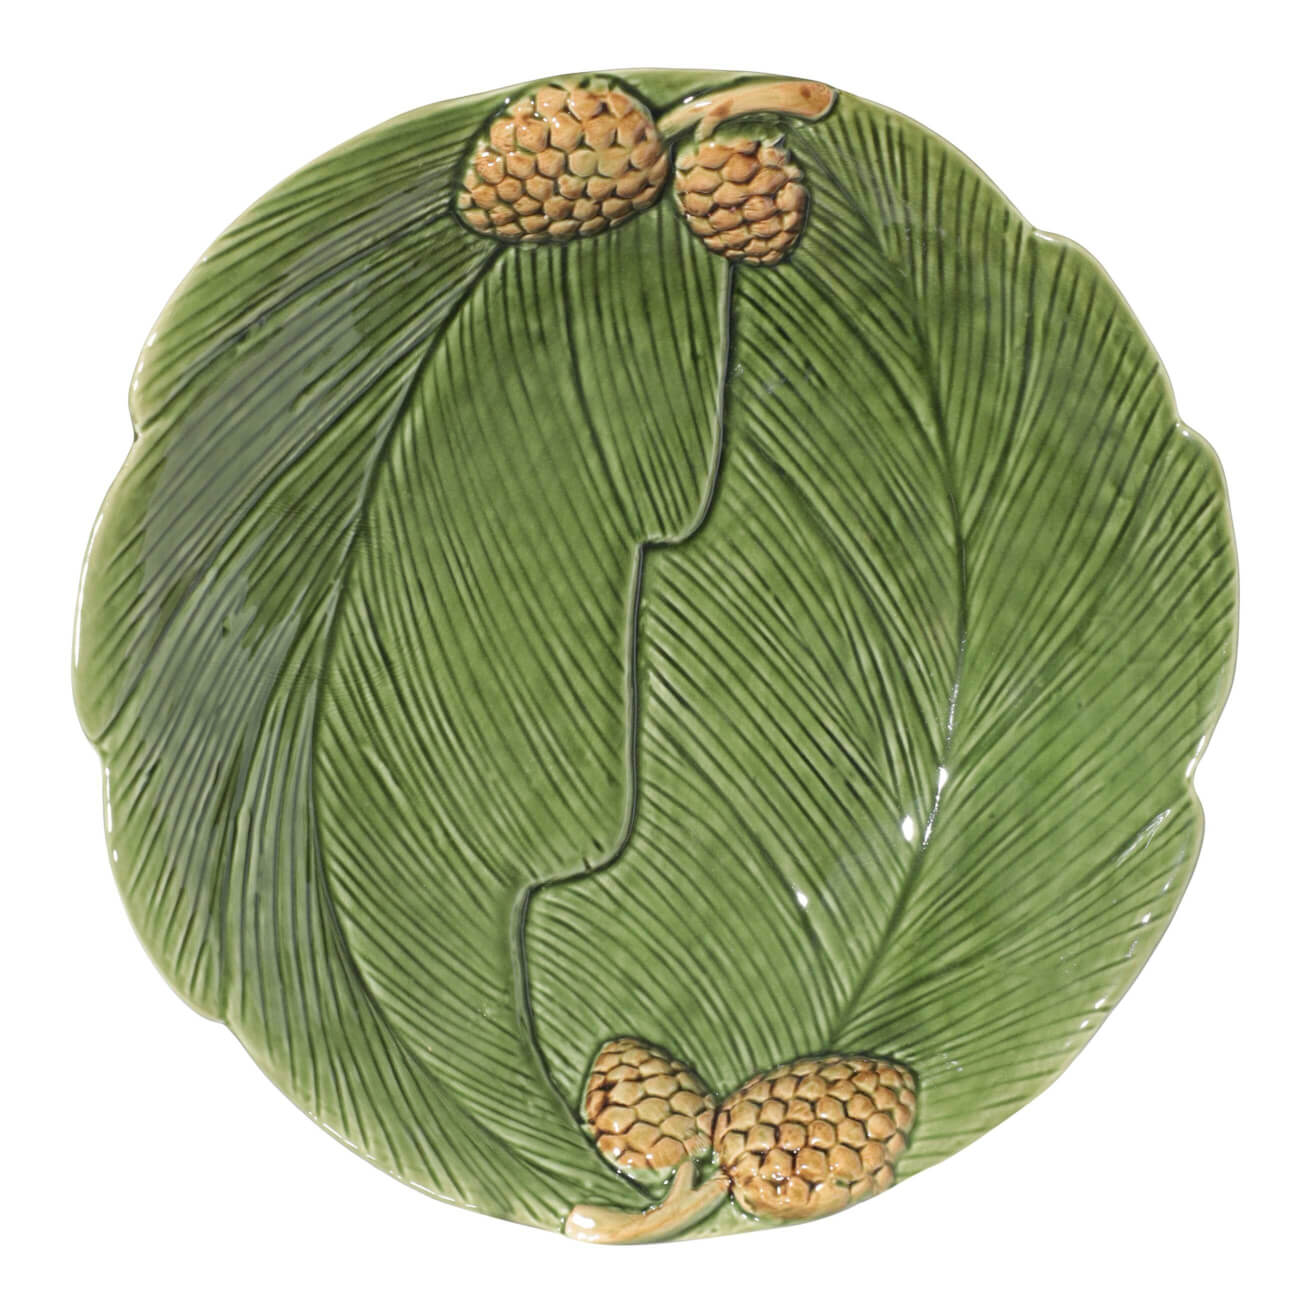 Блюдо, 26 см, керамика, круглое, зеленое, Шишки на листе, Fir cone блюдо для запекания berghoff 18х12 5 см керамика 4490281